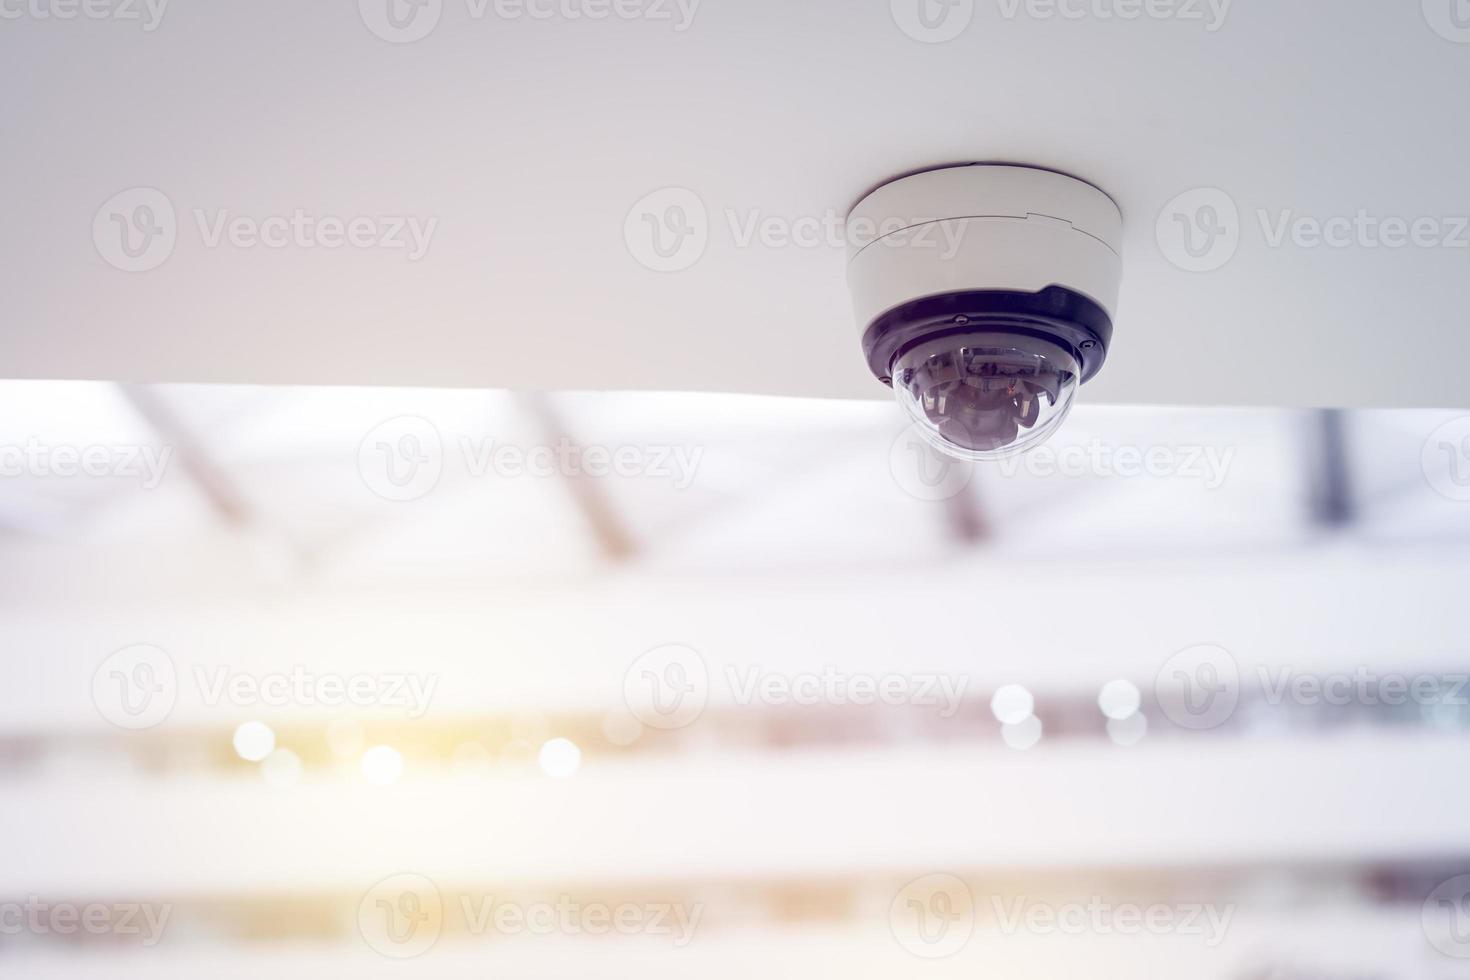 câmera de segurança cctv no teto branco, câmeras inteligentes, gravação de vídeo, sistema antifurto, vigilância. foto